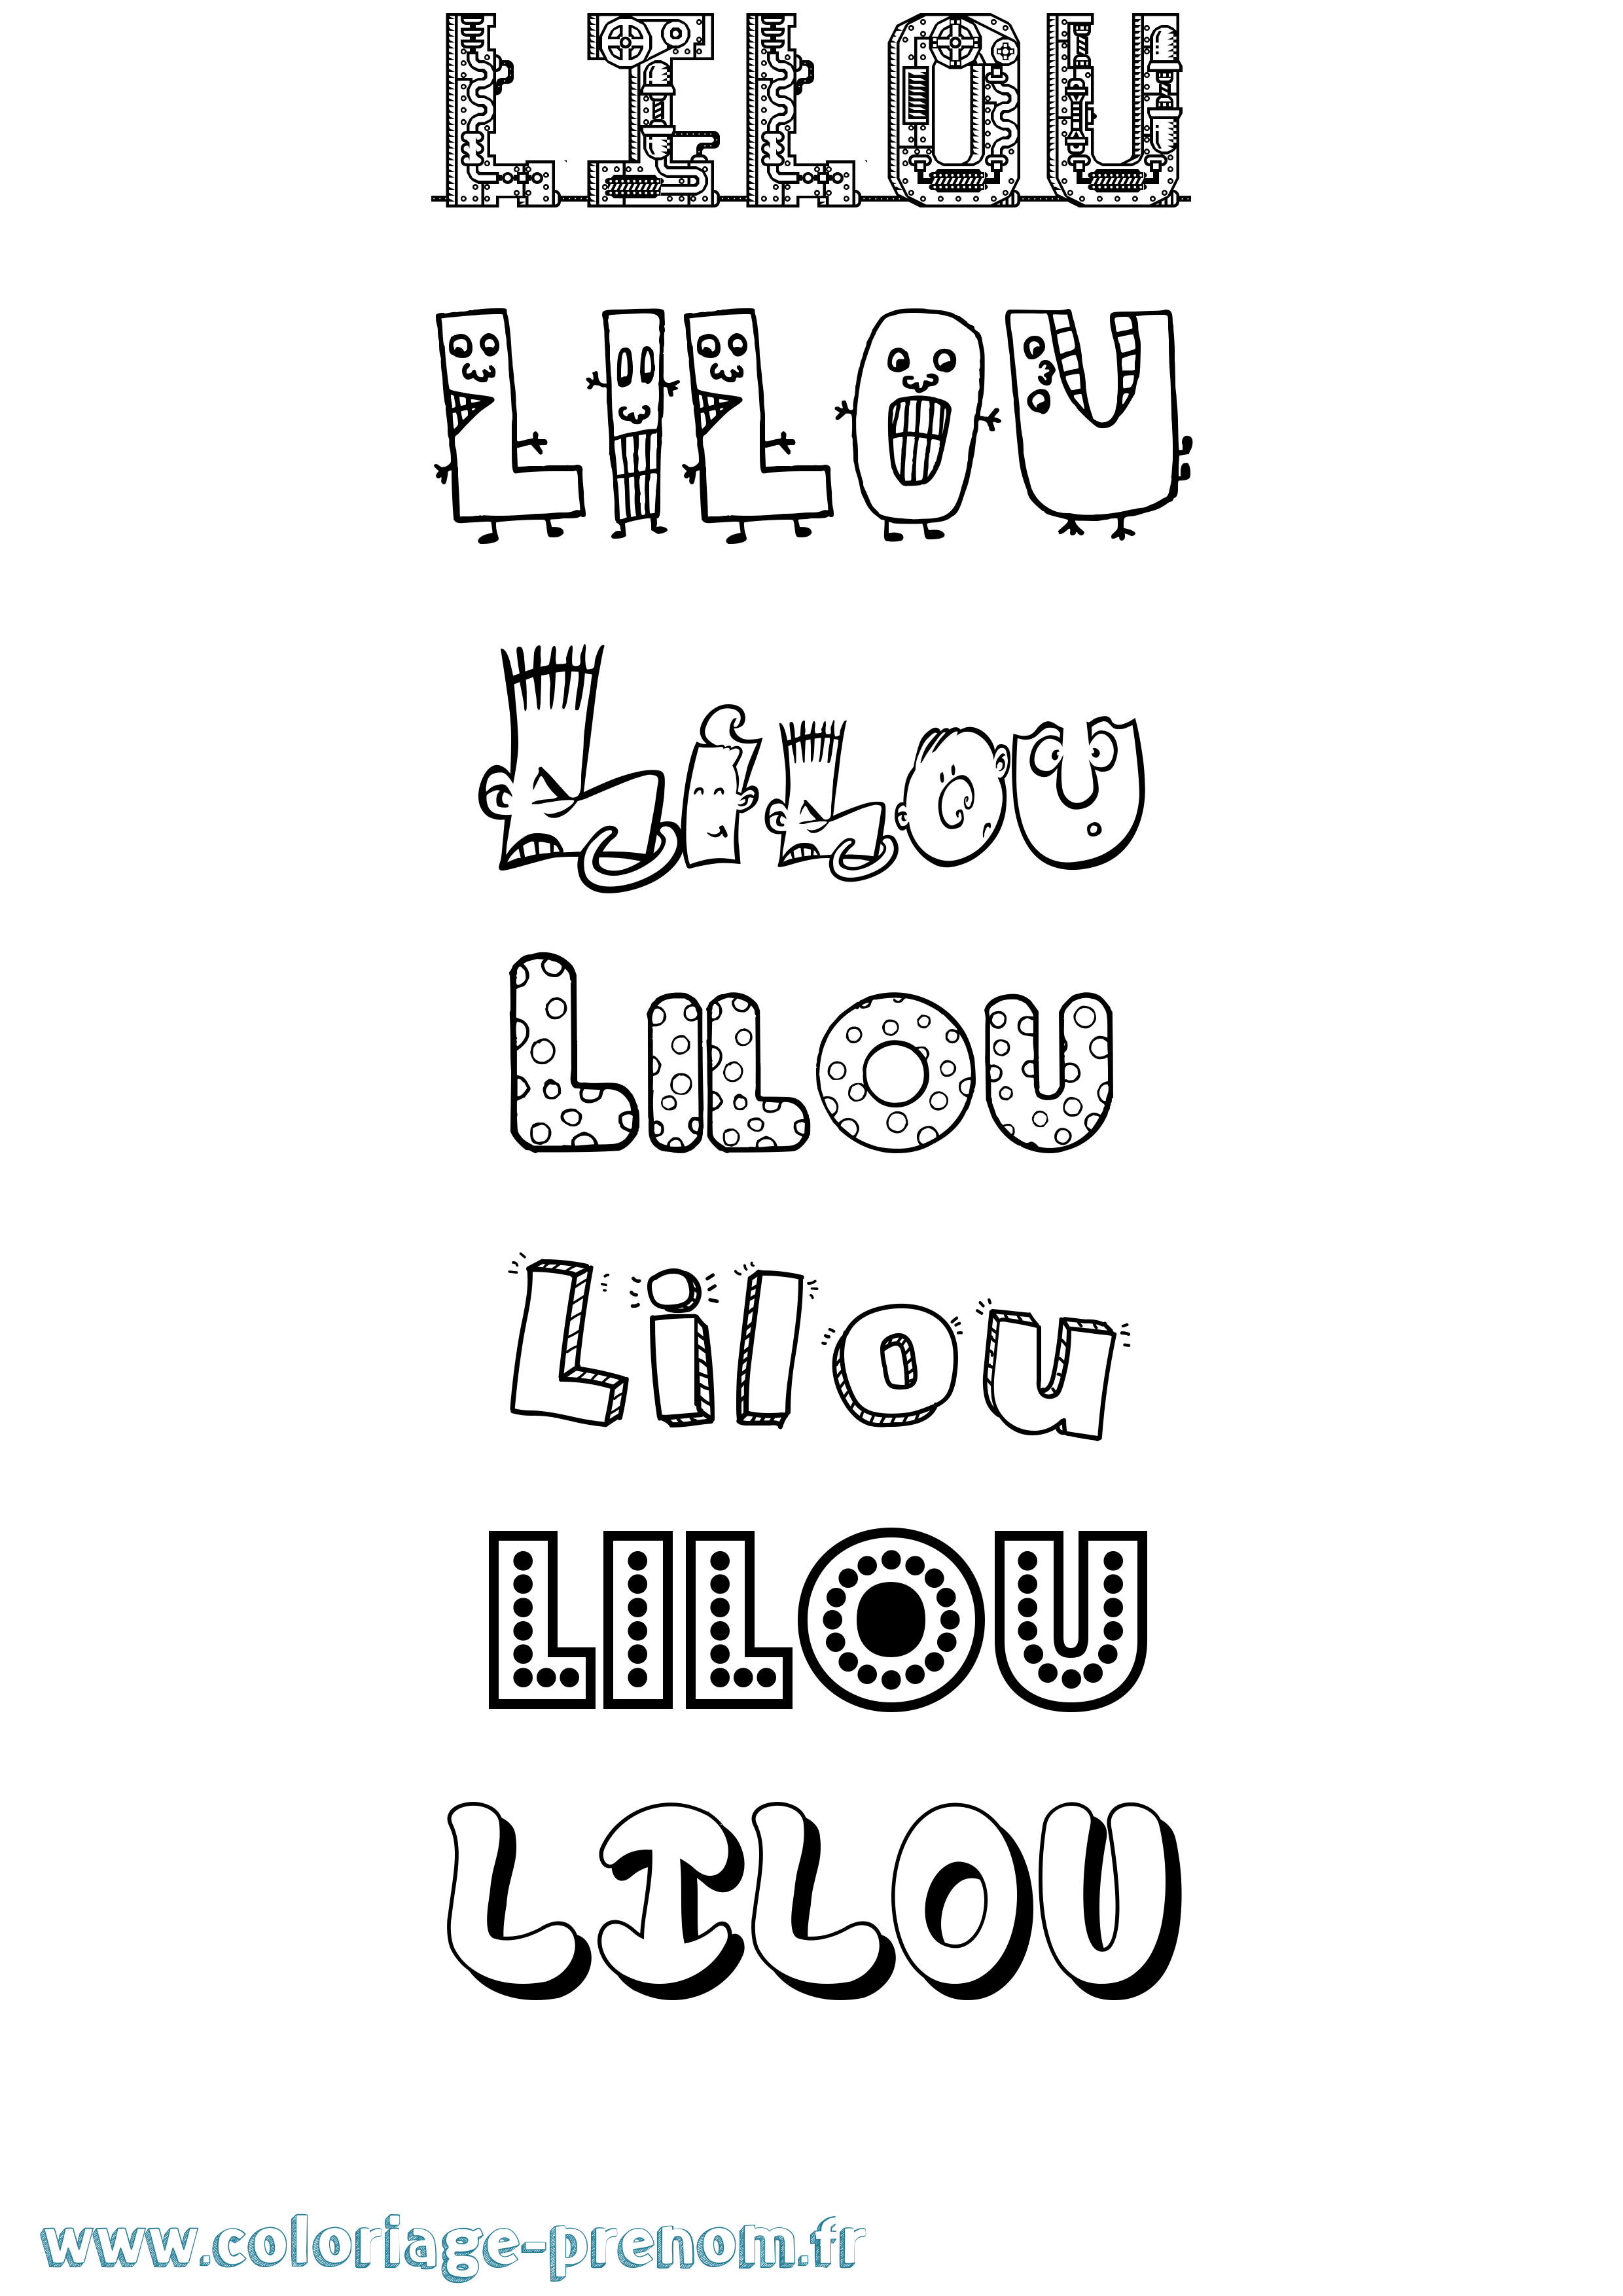 Coloriage prénom Lilou Fun